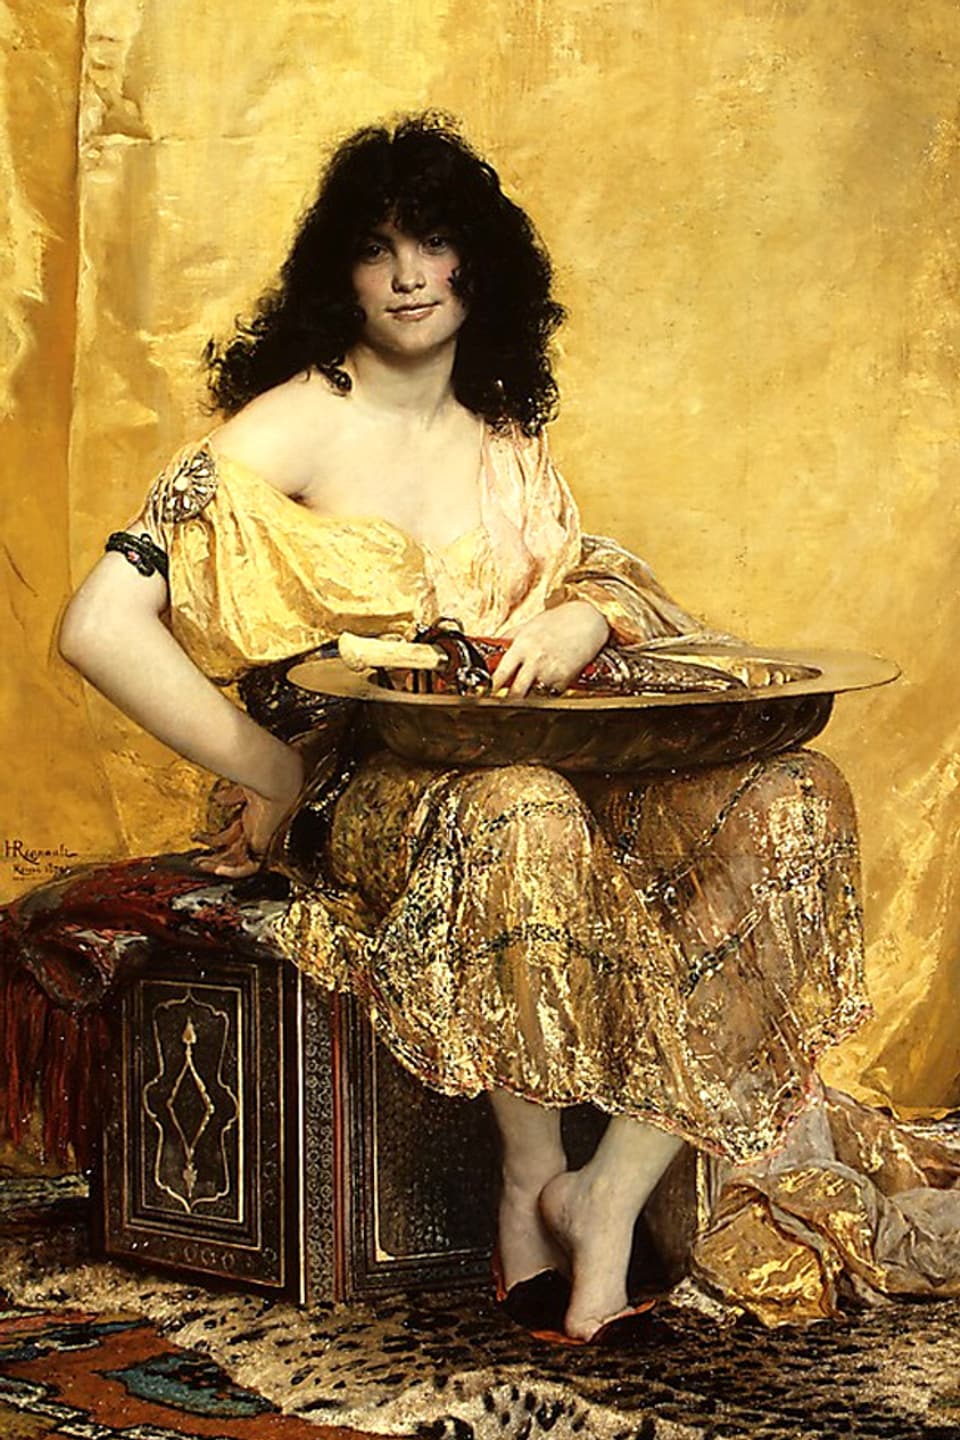 Frau vor goldenem Hintergrund mit goldener Schale auf dem Schoss.